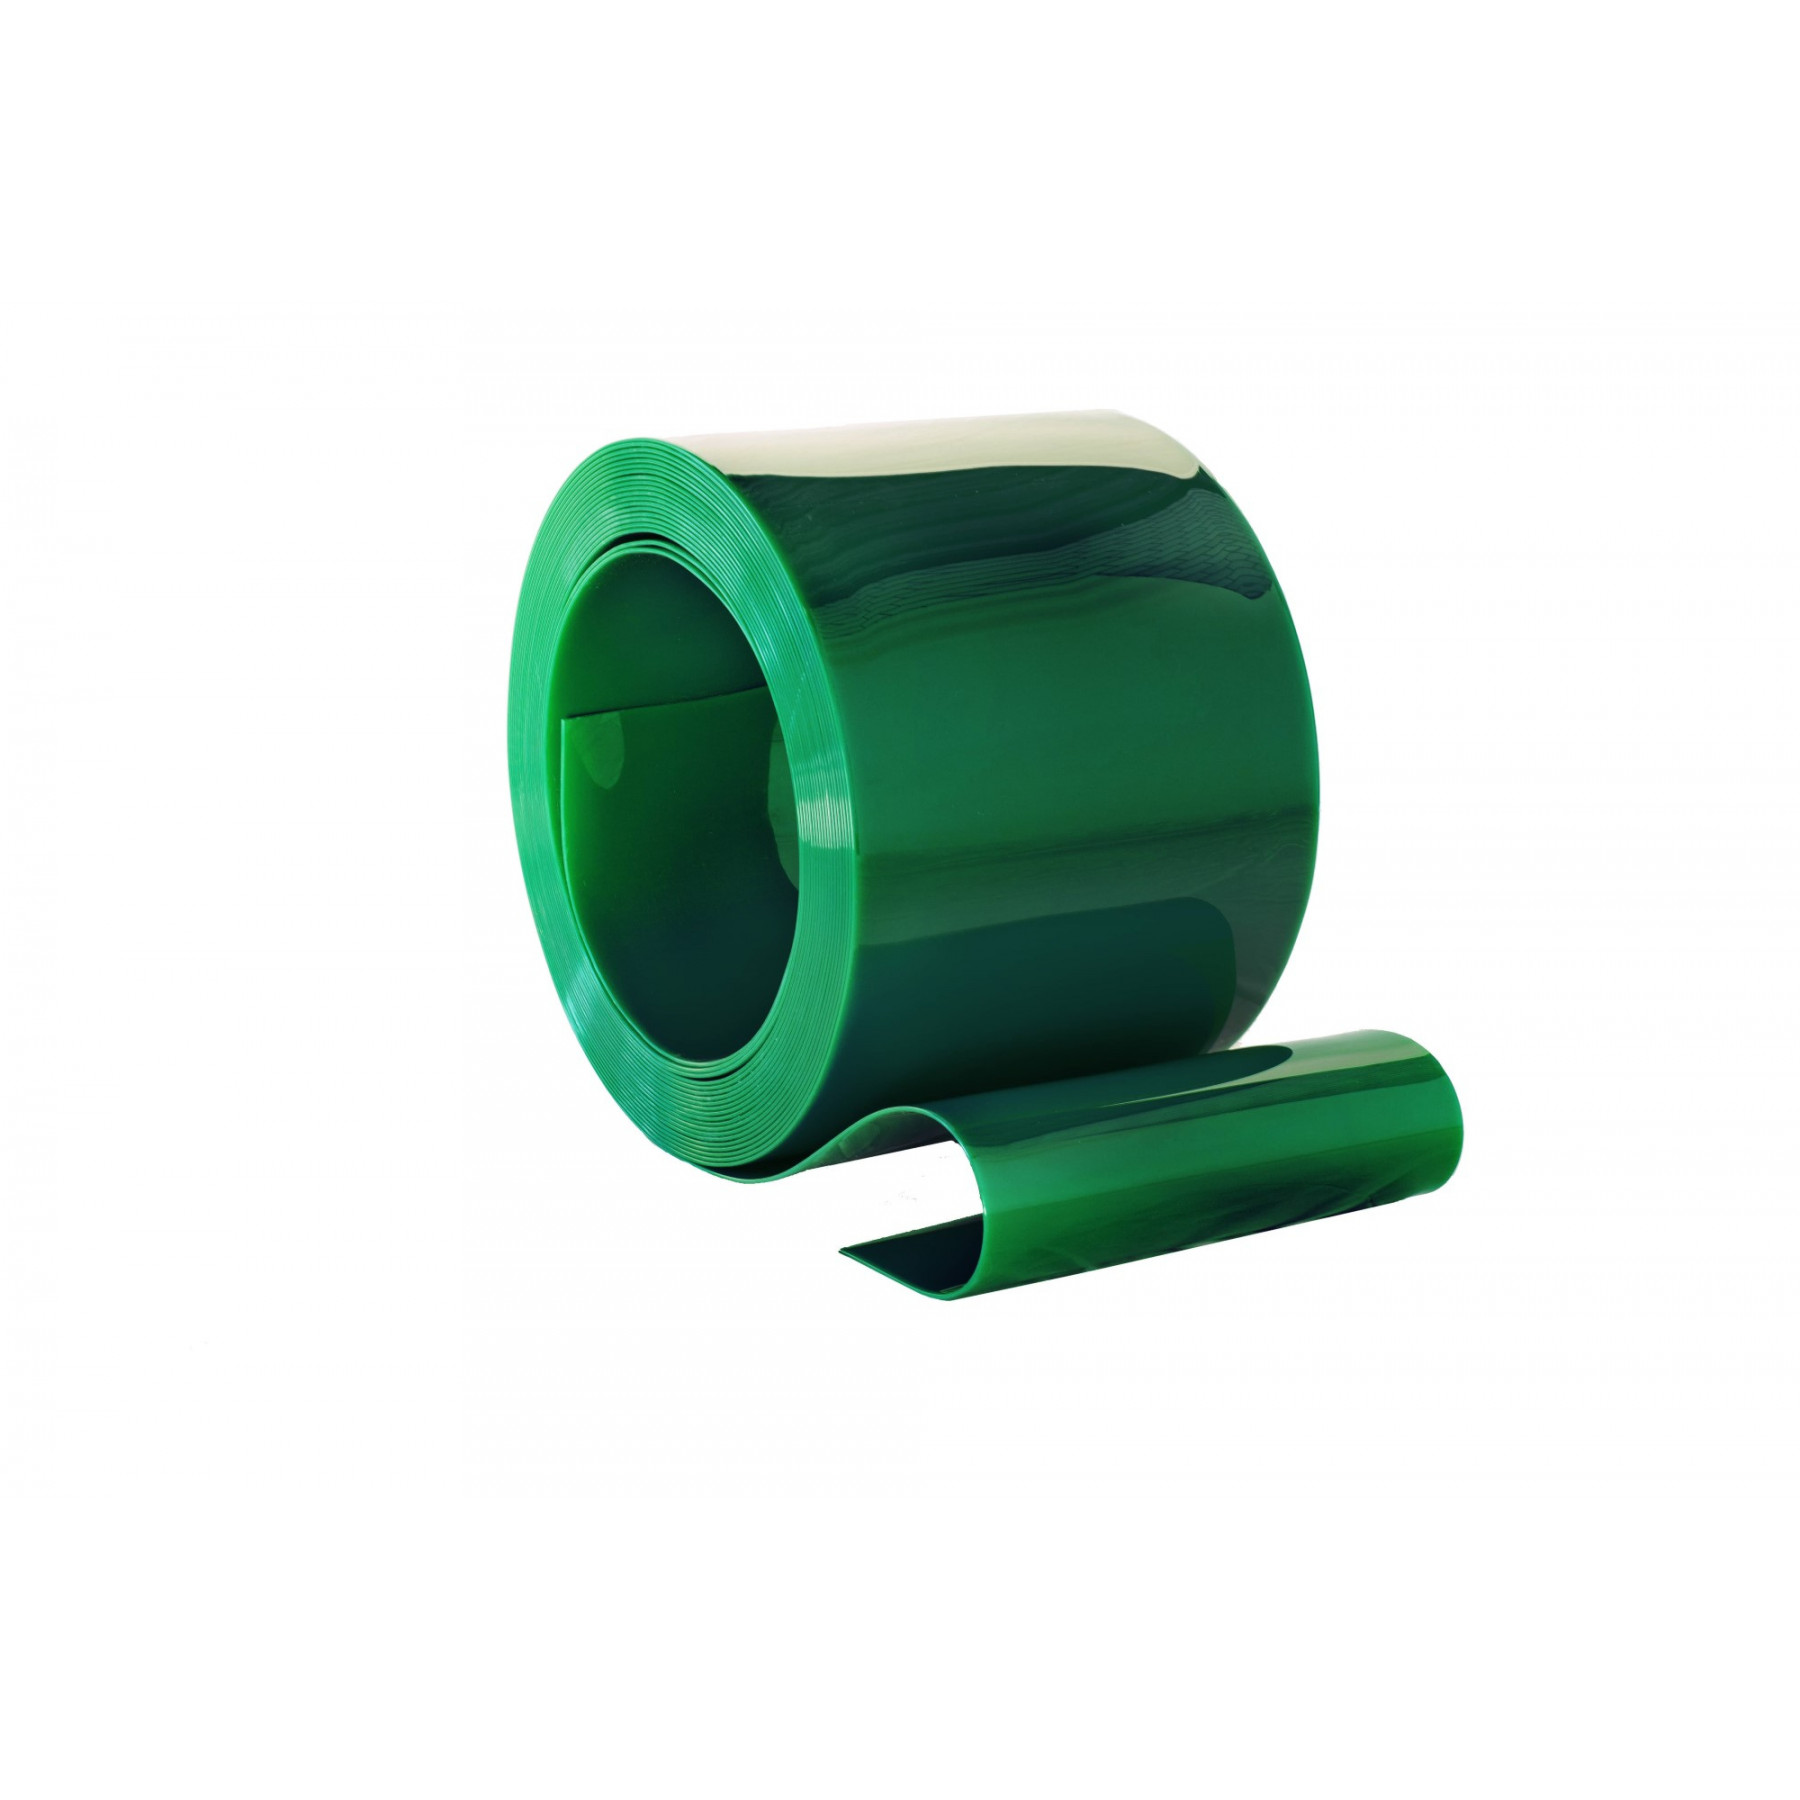 PVC op rol, 300mm breed, 2mm dik, 50 meter lengte, laskwaliteit, kleur groen, transparant